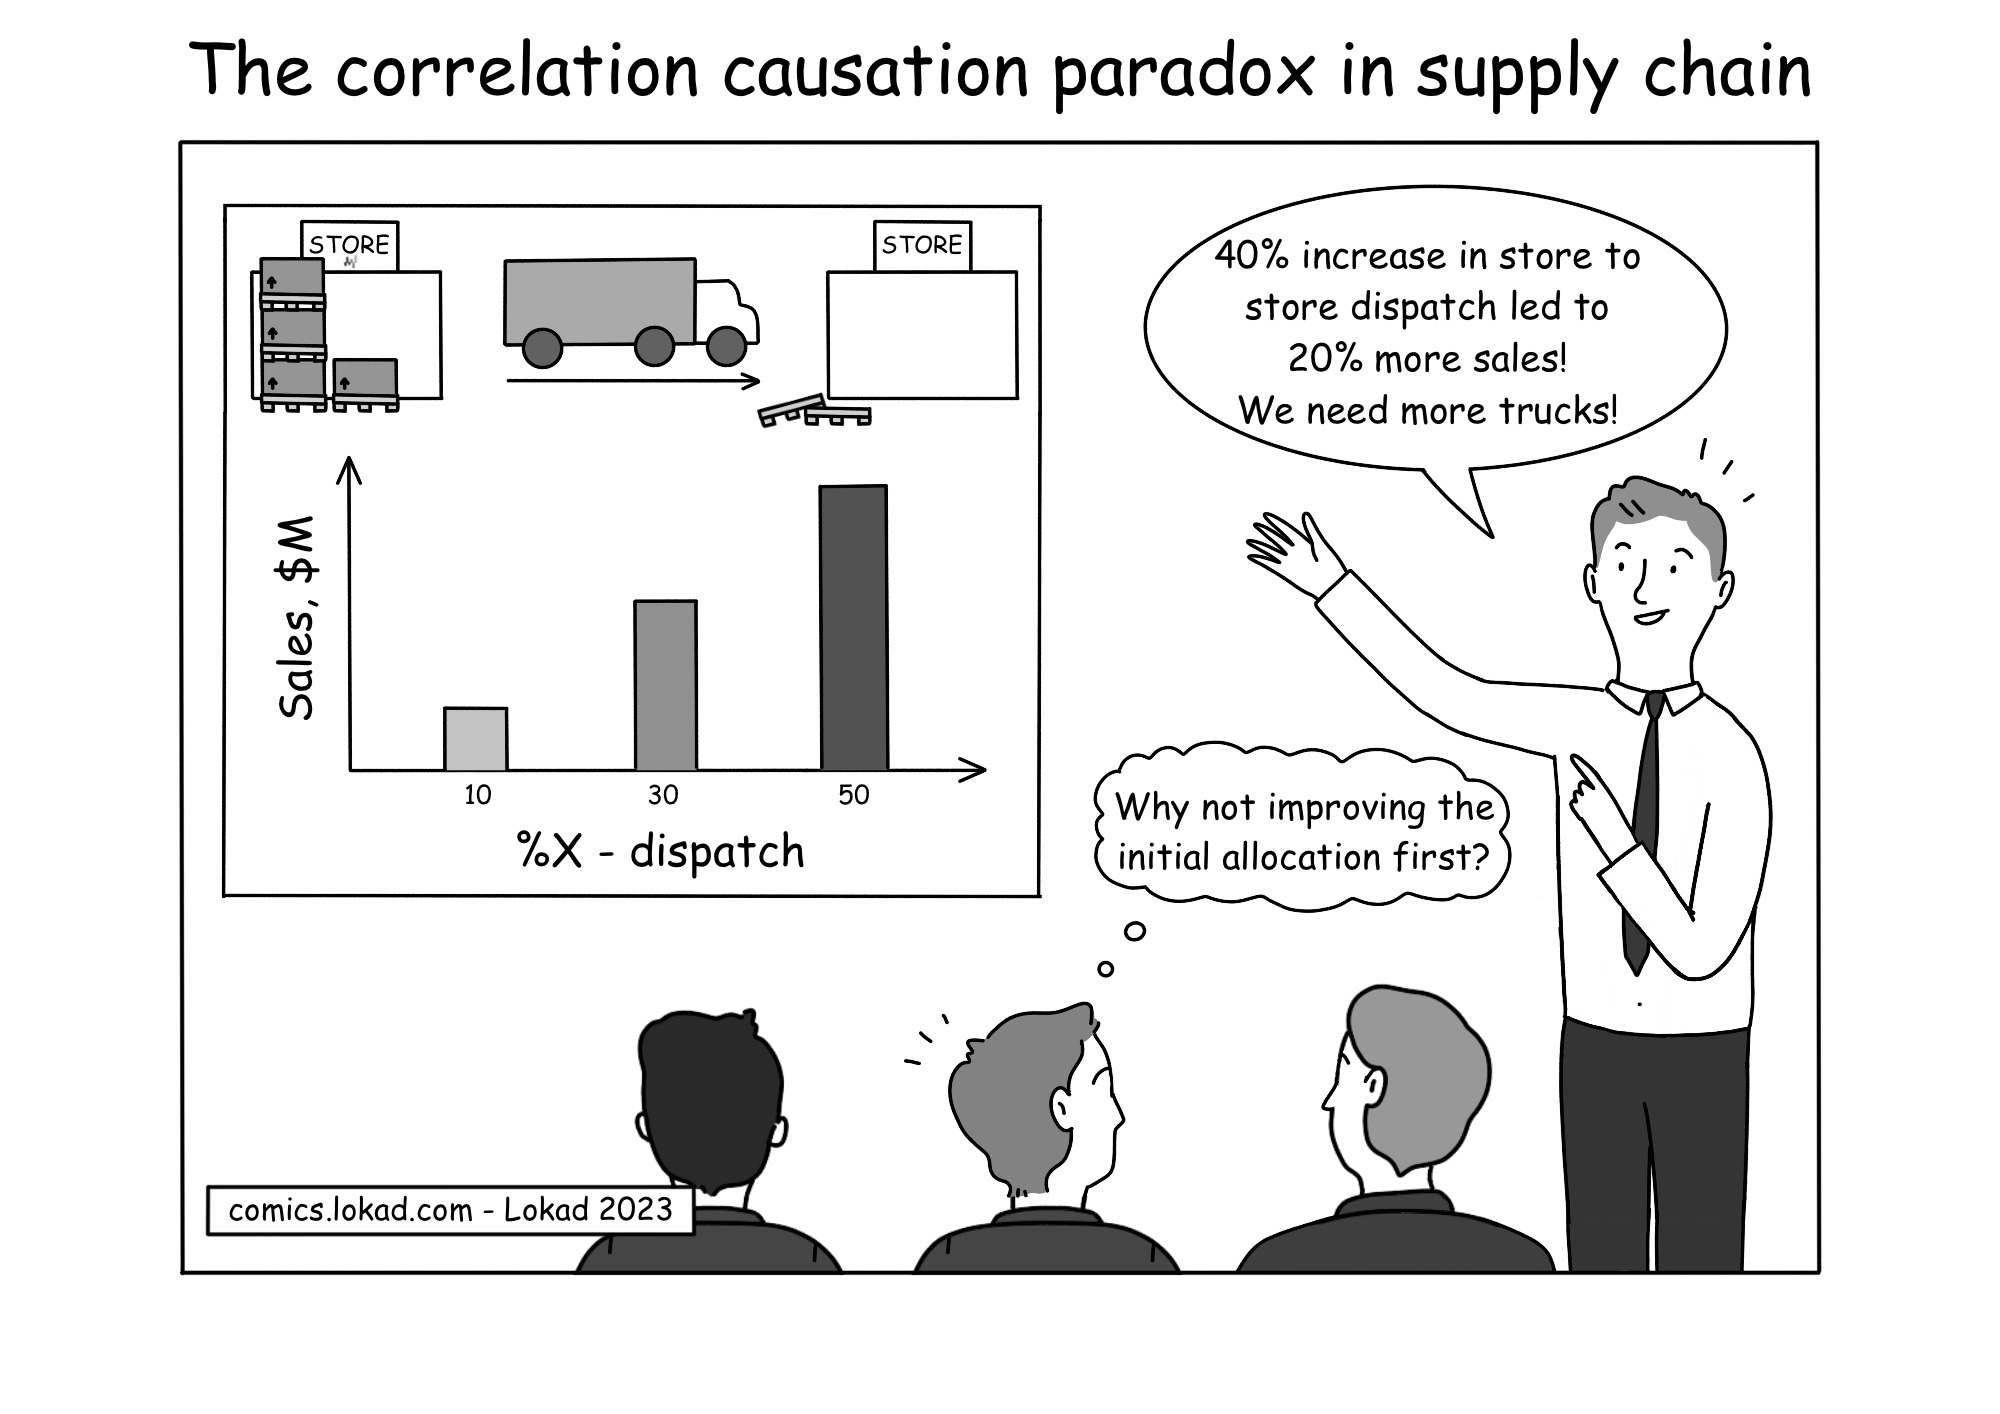 La paradoja de la correlación y la causalidad en la cadena de suministro